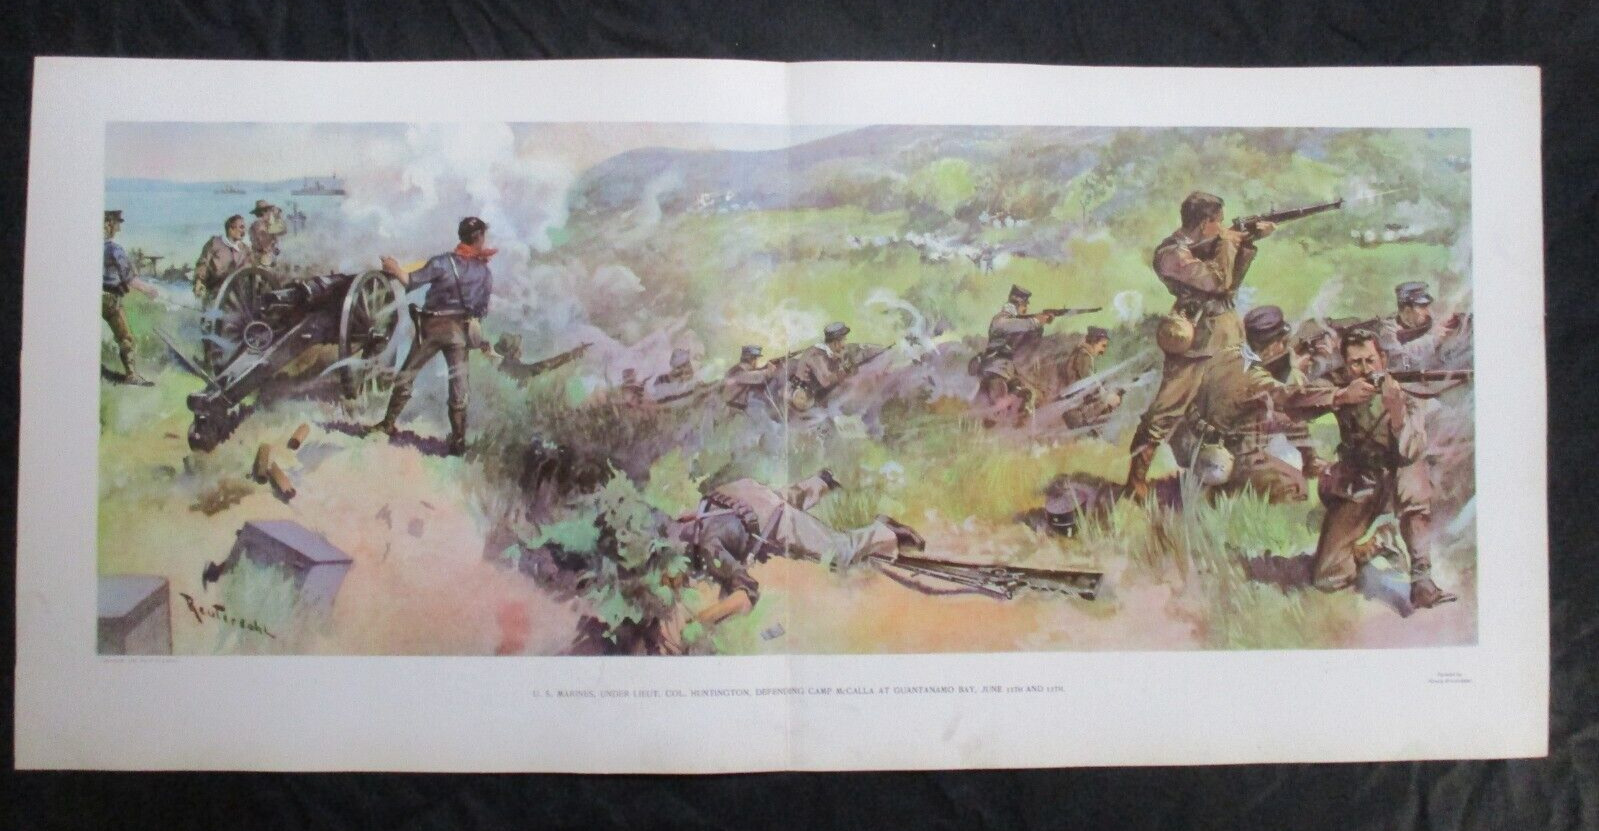 1898 Spanish American War Print - Marines Defending Camp McCalla at Guantanamo